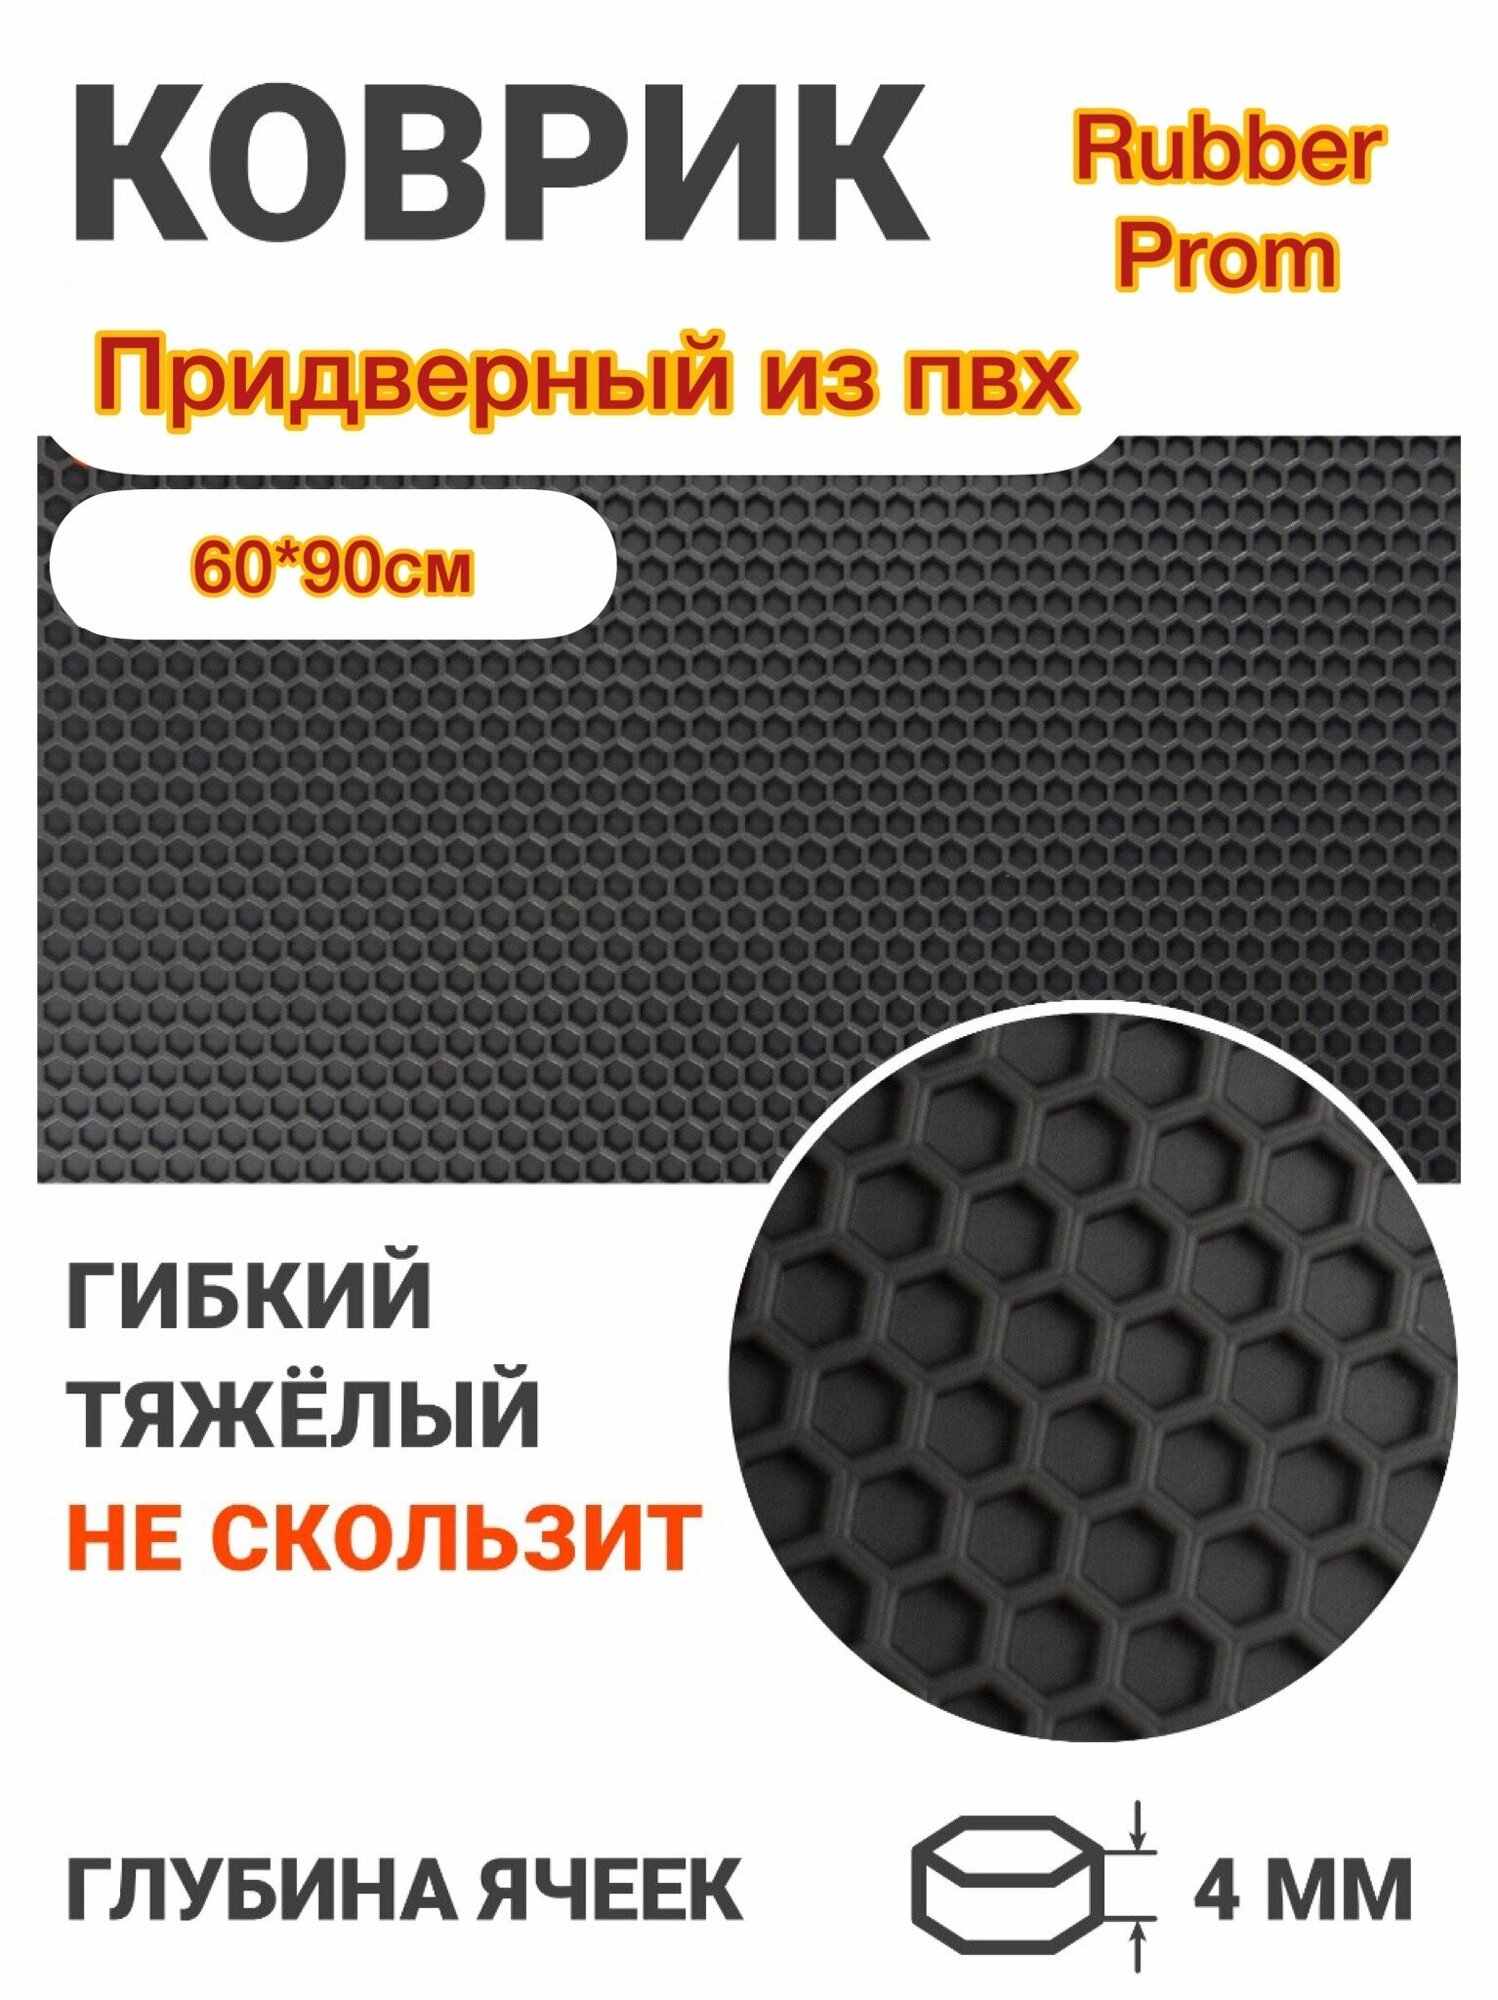 Резиновый придверный коврик 60*90/Придверный коврик на резиновой основе 60*90/Коврик в прихожую 60*90